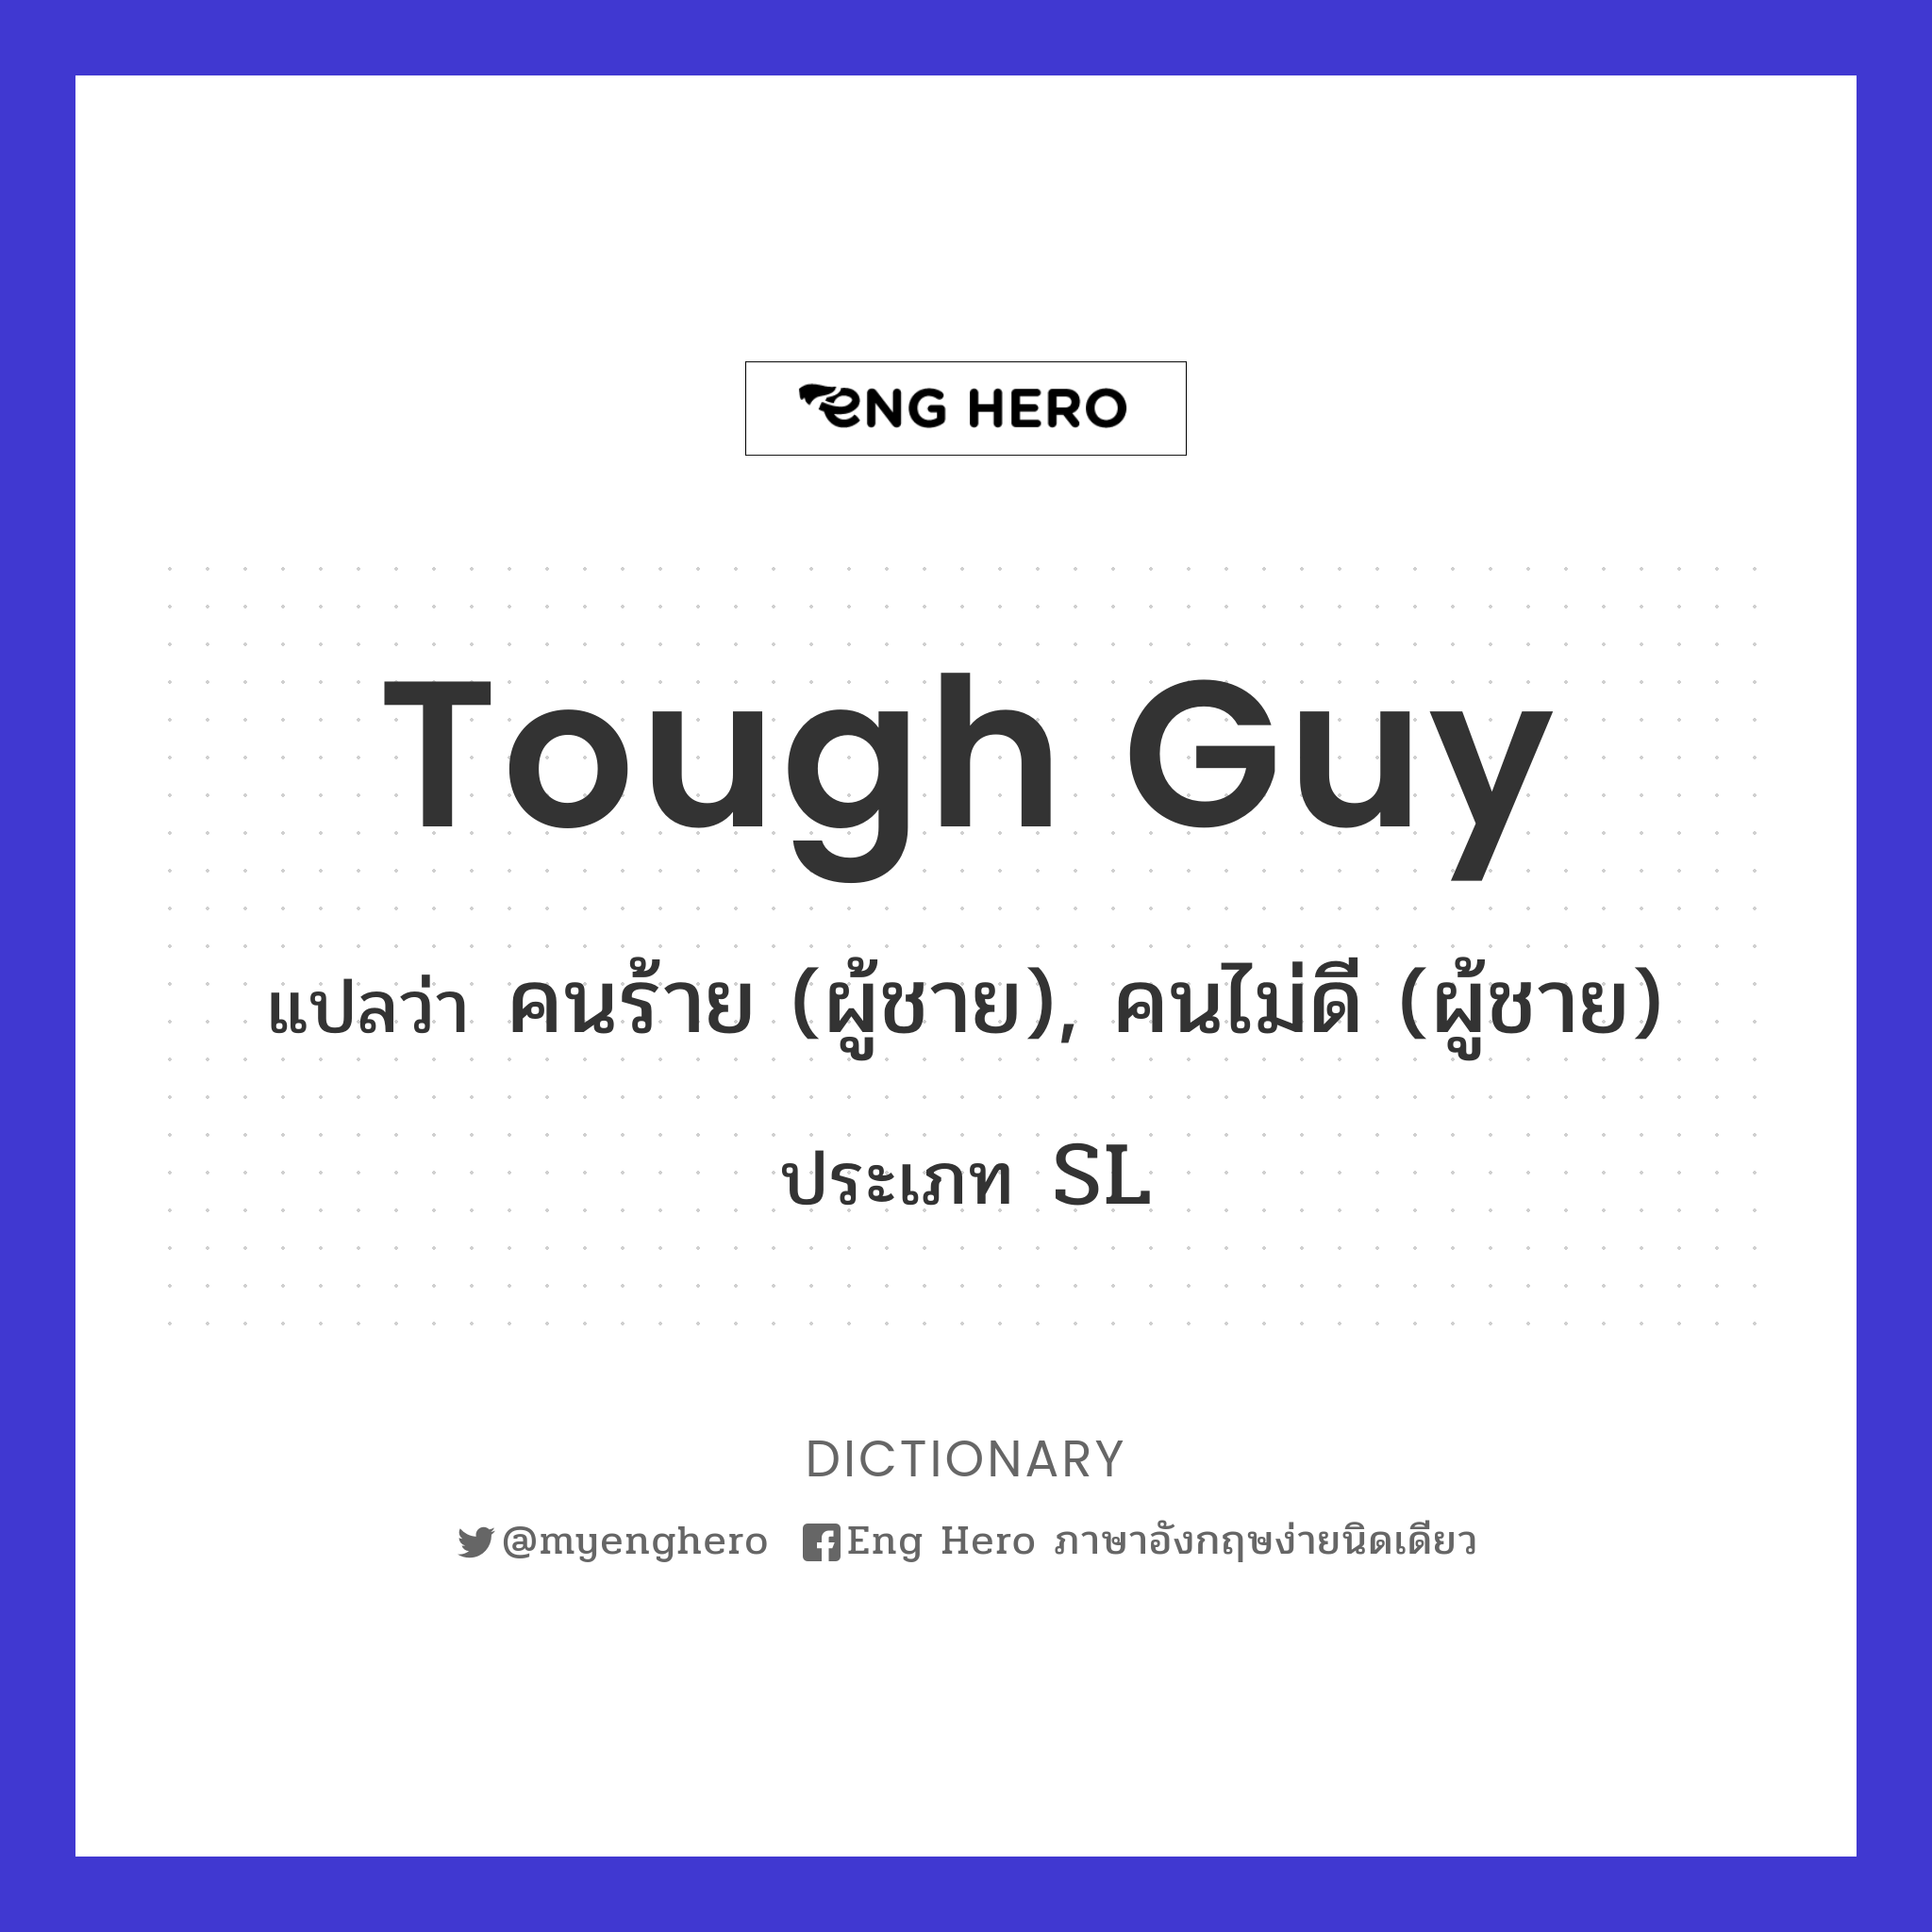 tough guy